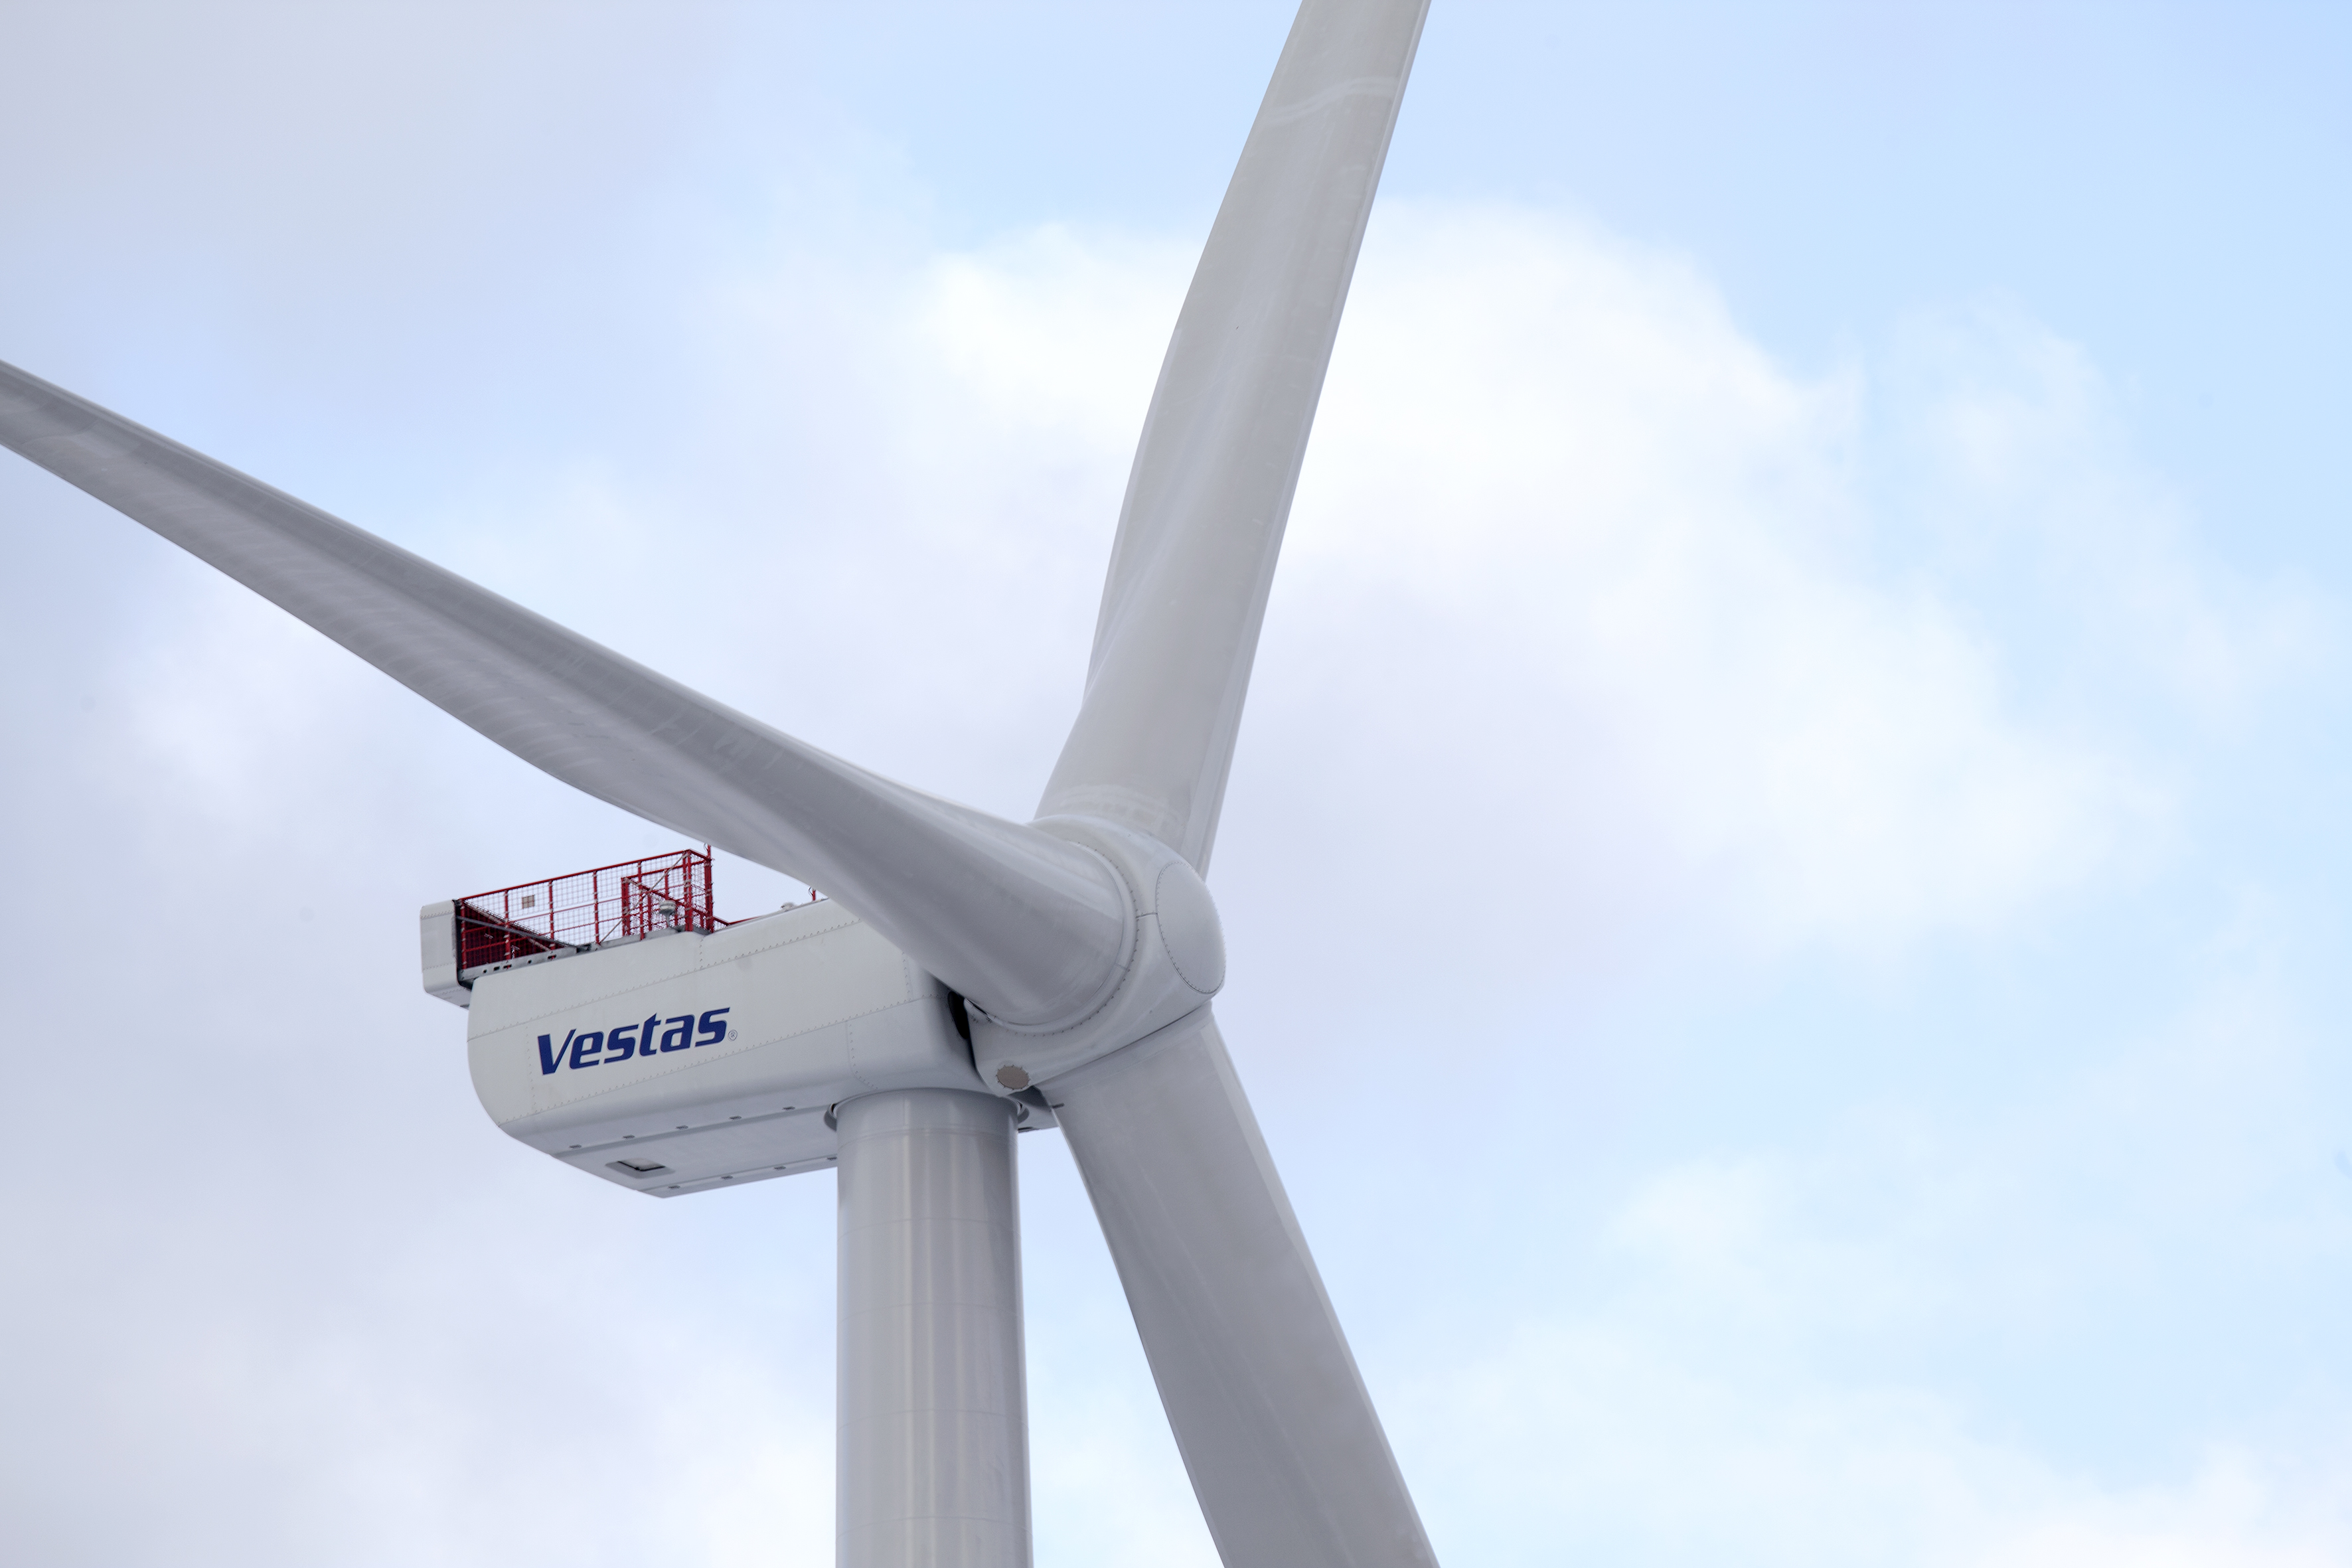 MHI Vestas' V164-8.0 MW Turbine Provisionally Certified